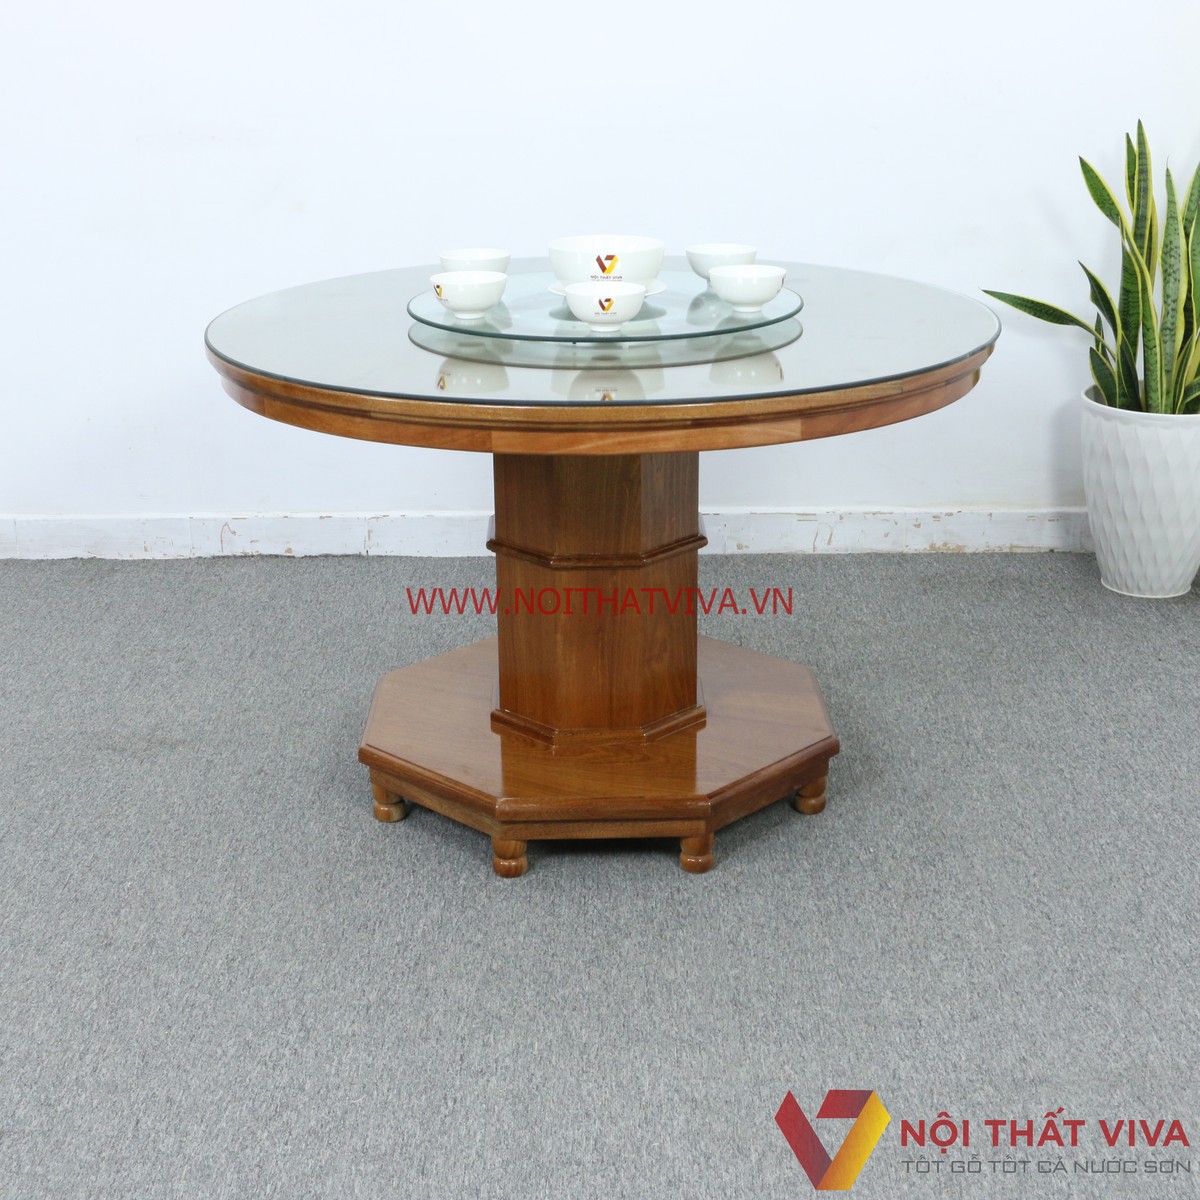 Đa dạng mẫu mã bàn ăn tròn bằng gỗ theo xu hướng dành cho gia đình Việt